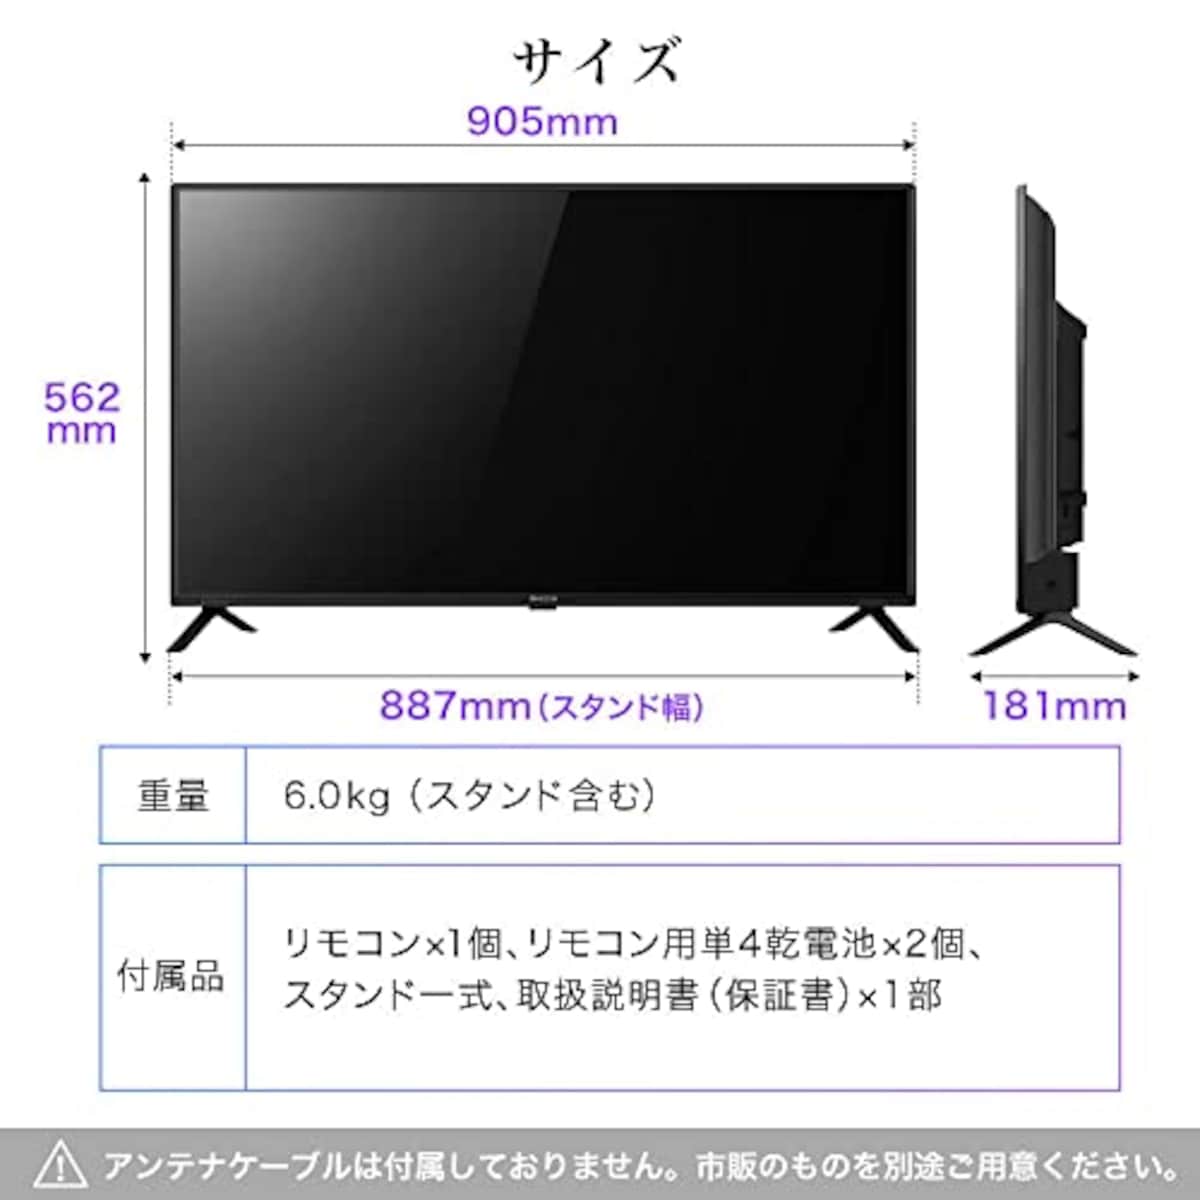  テレビ 40型 液晶テレビ フルハイビジョン 40V 40インチ 裏録画 外付けHDD録画機能 ダブルチューナー MAXZEN J40CHS06画像7 